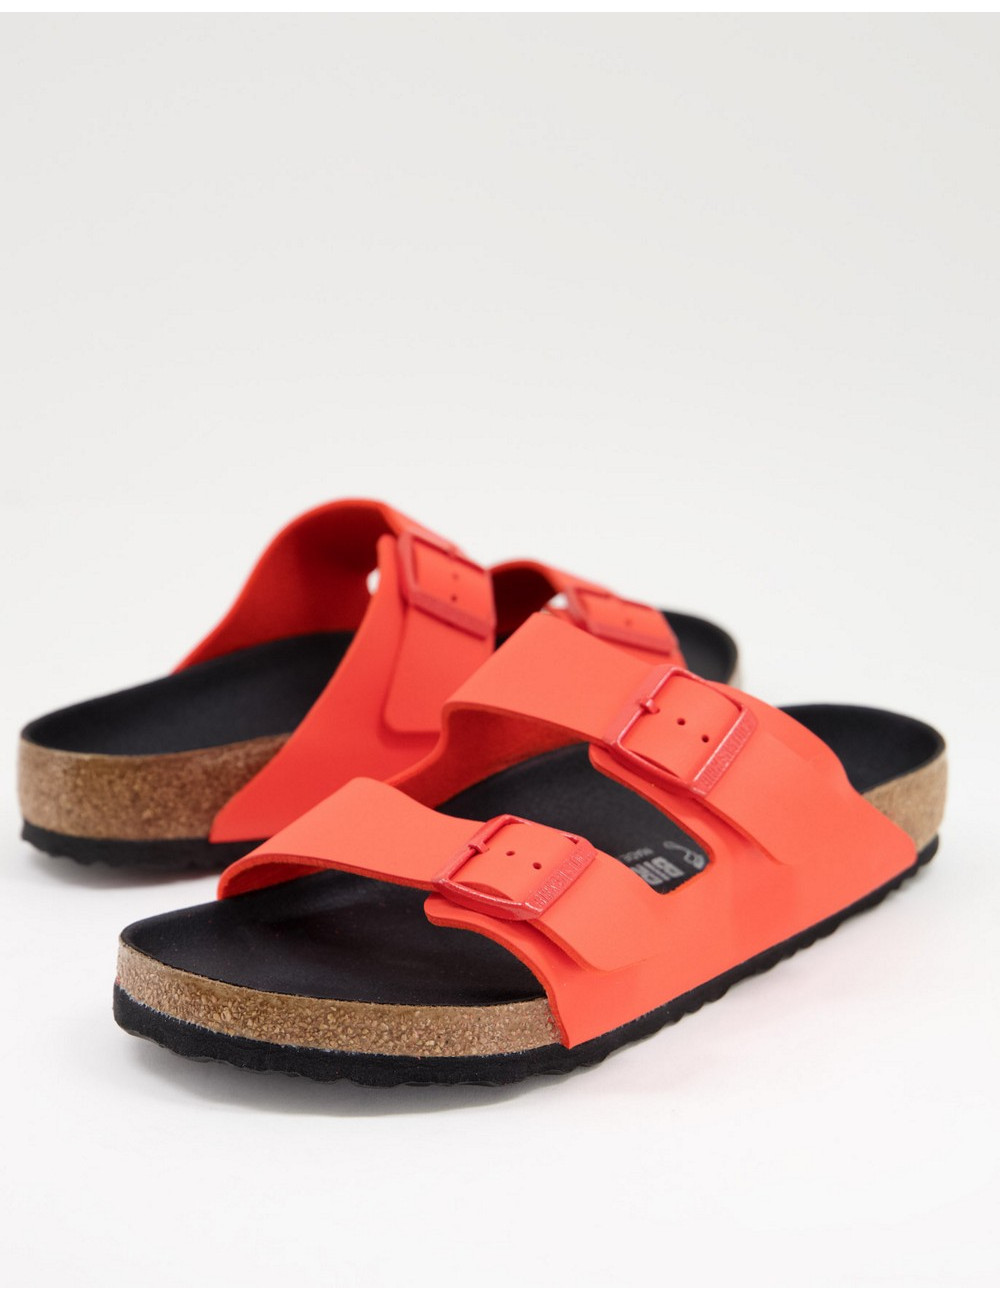 Birkenstock arizona sandals...